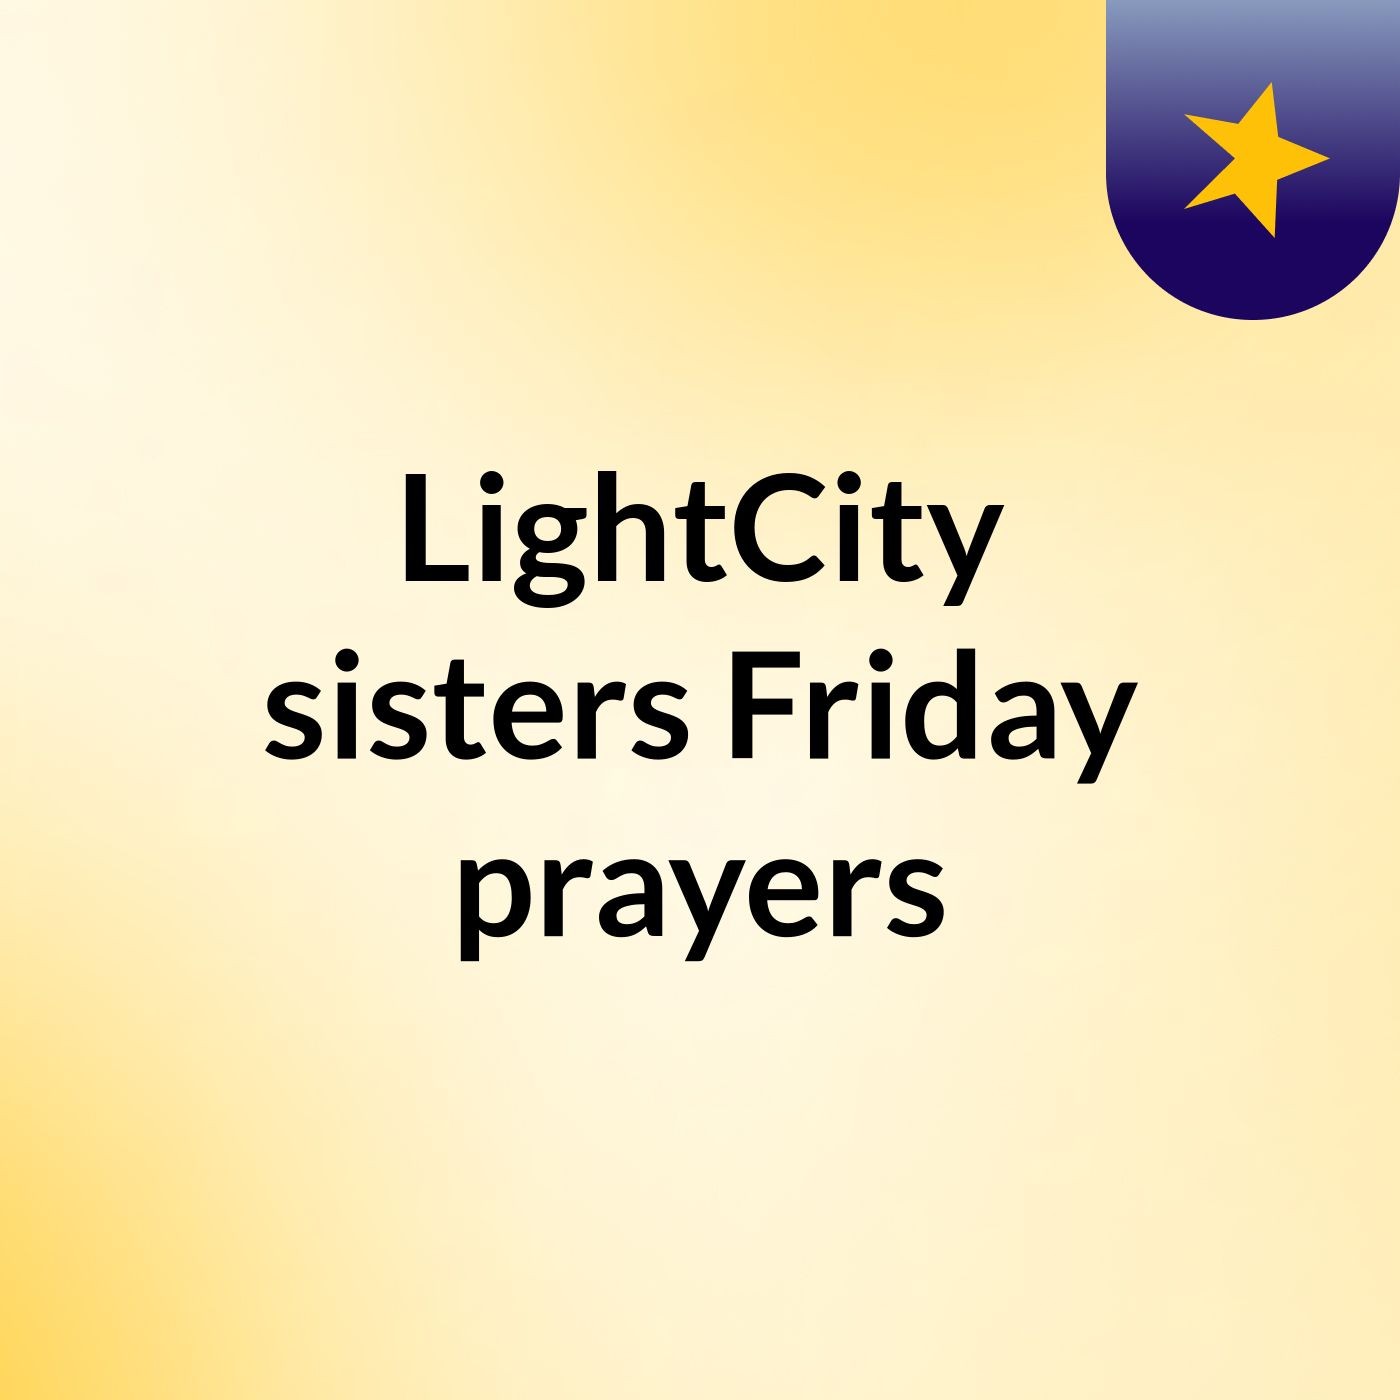 Episode 3 - LightCity sisters Friday prayers